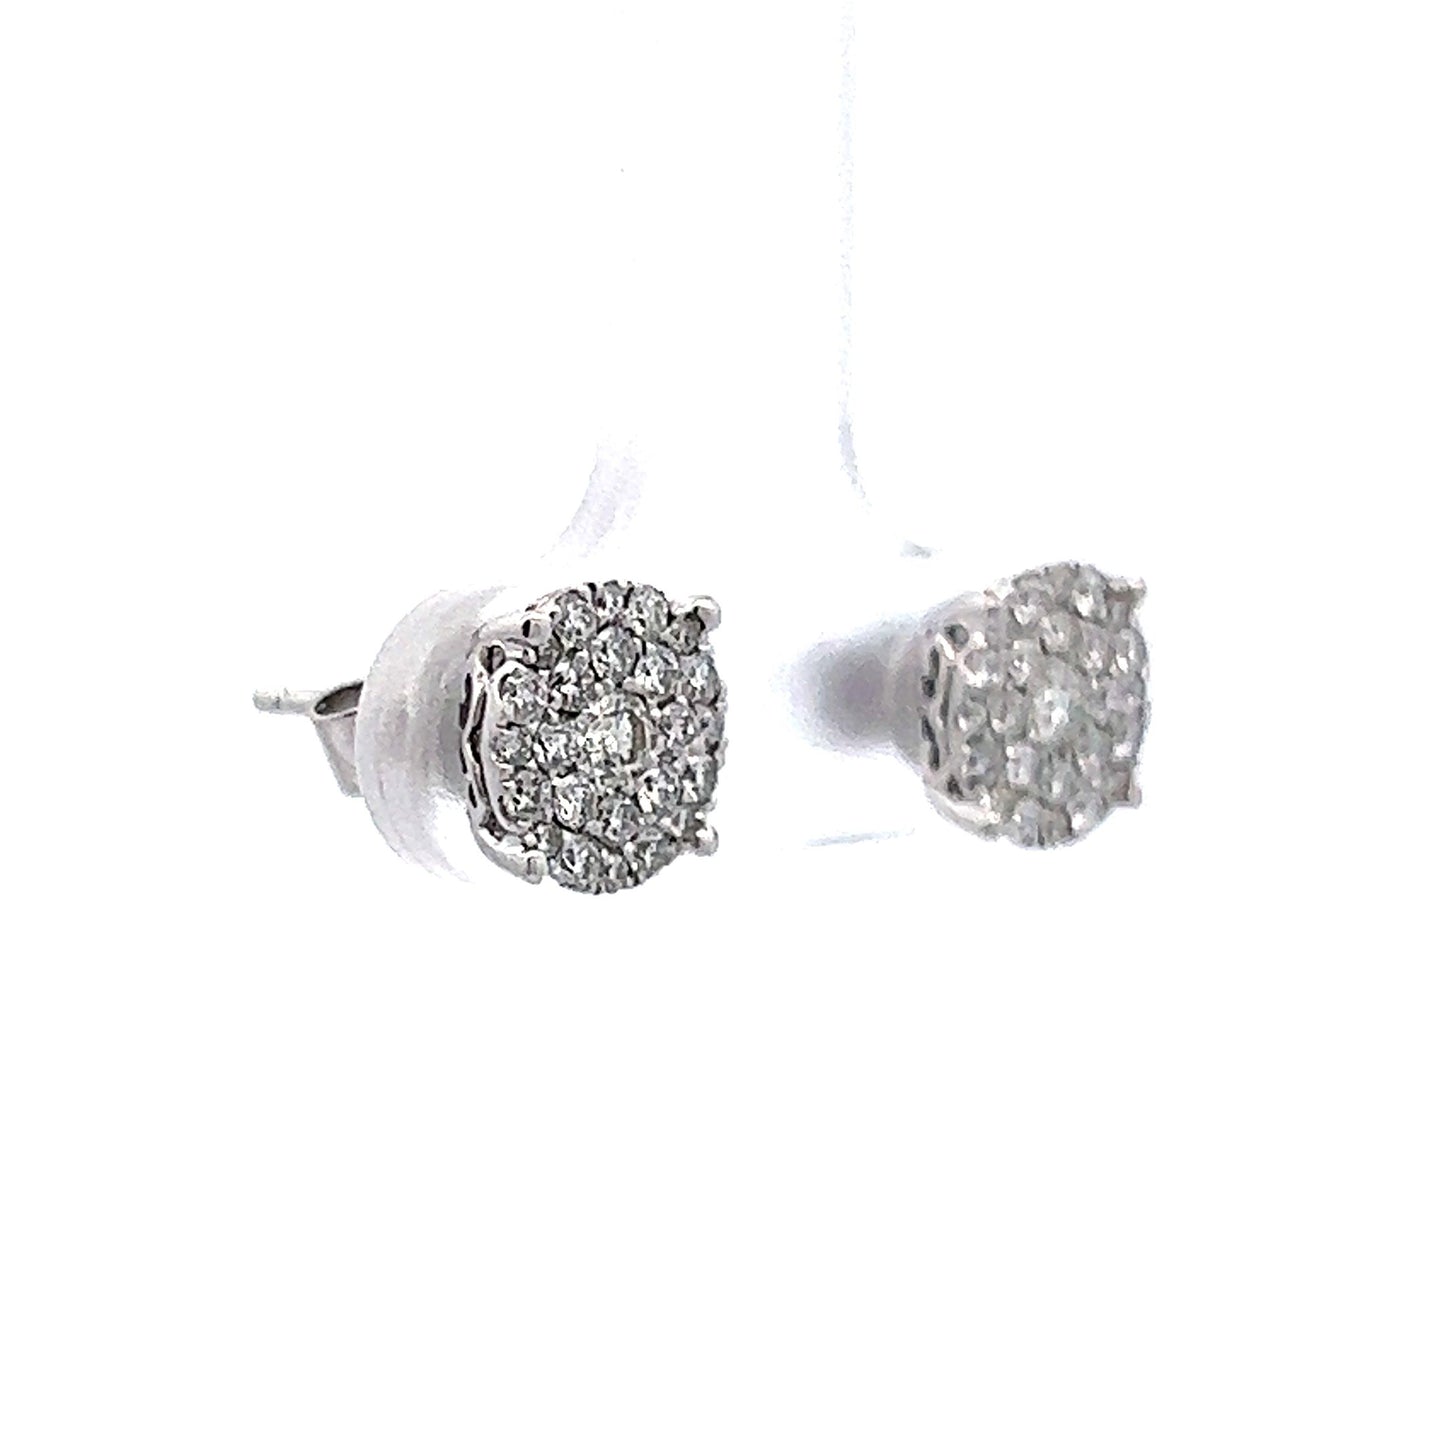 .48 Diamond Cluster Earring Studs in 14k White Gold